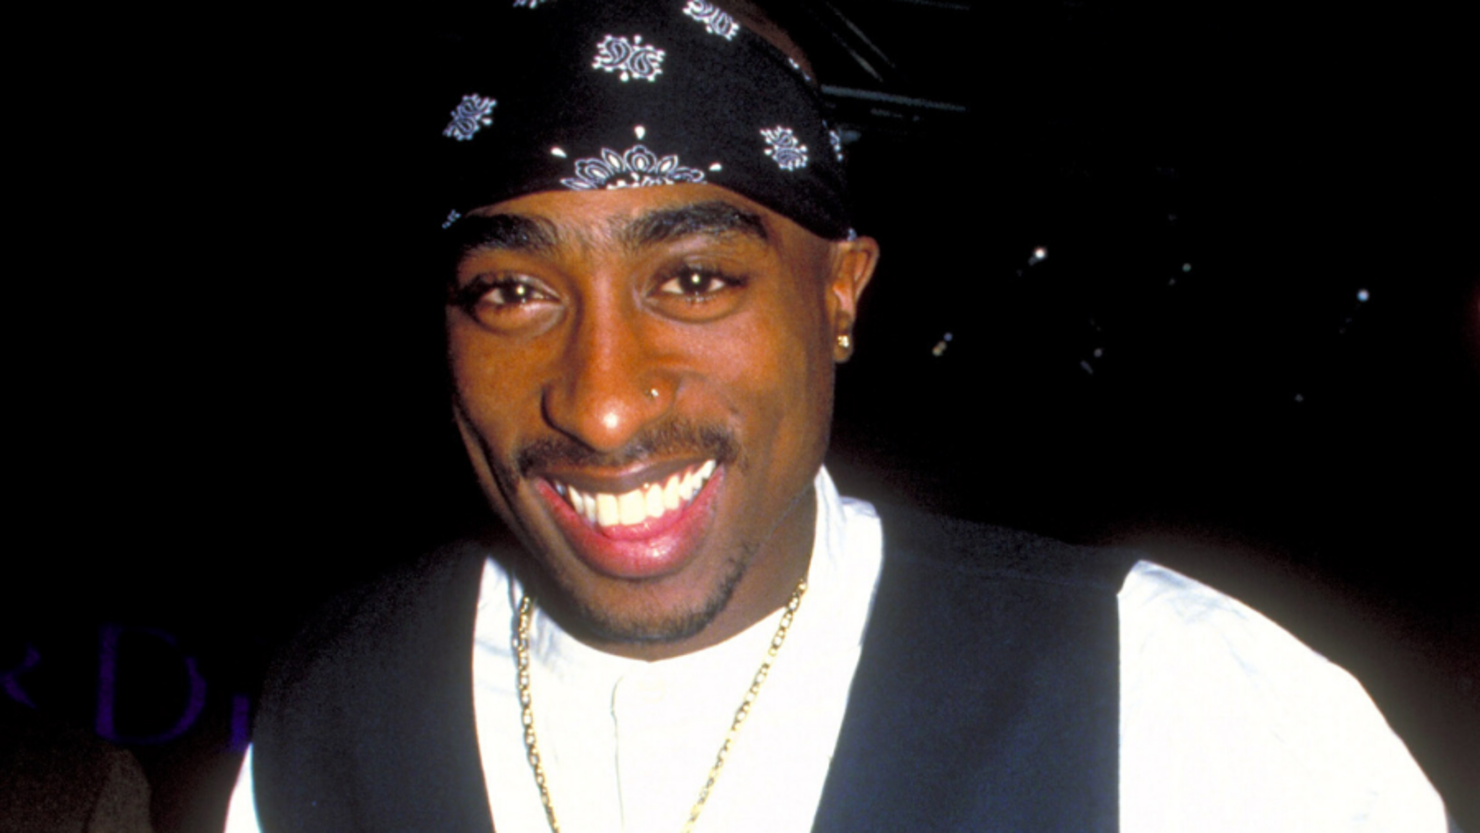 Tupac "2Pac" Shakur